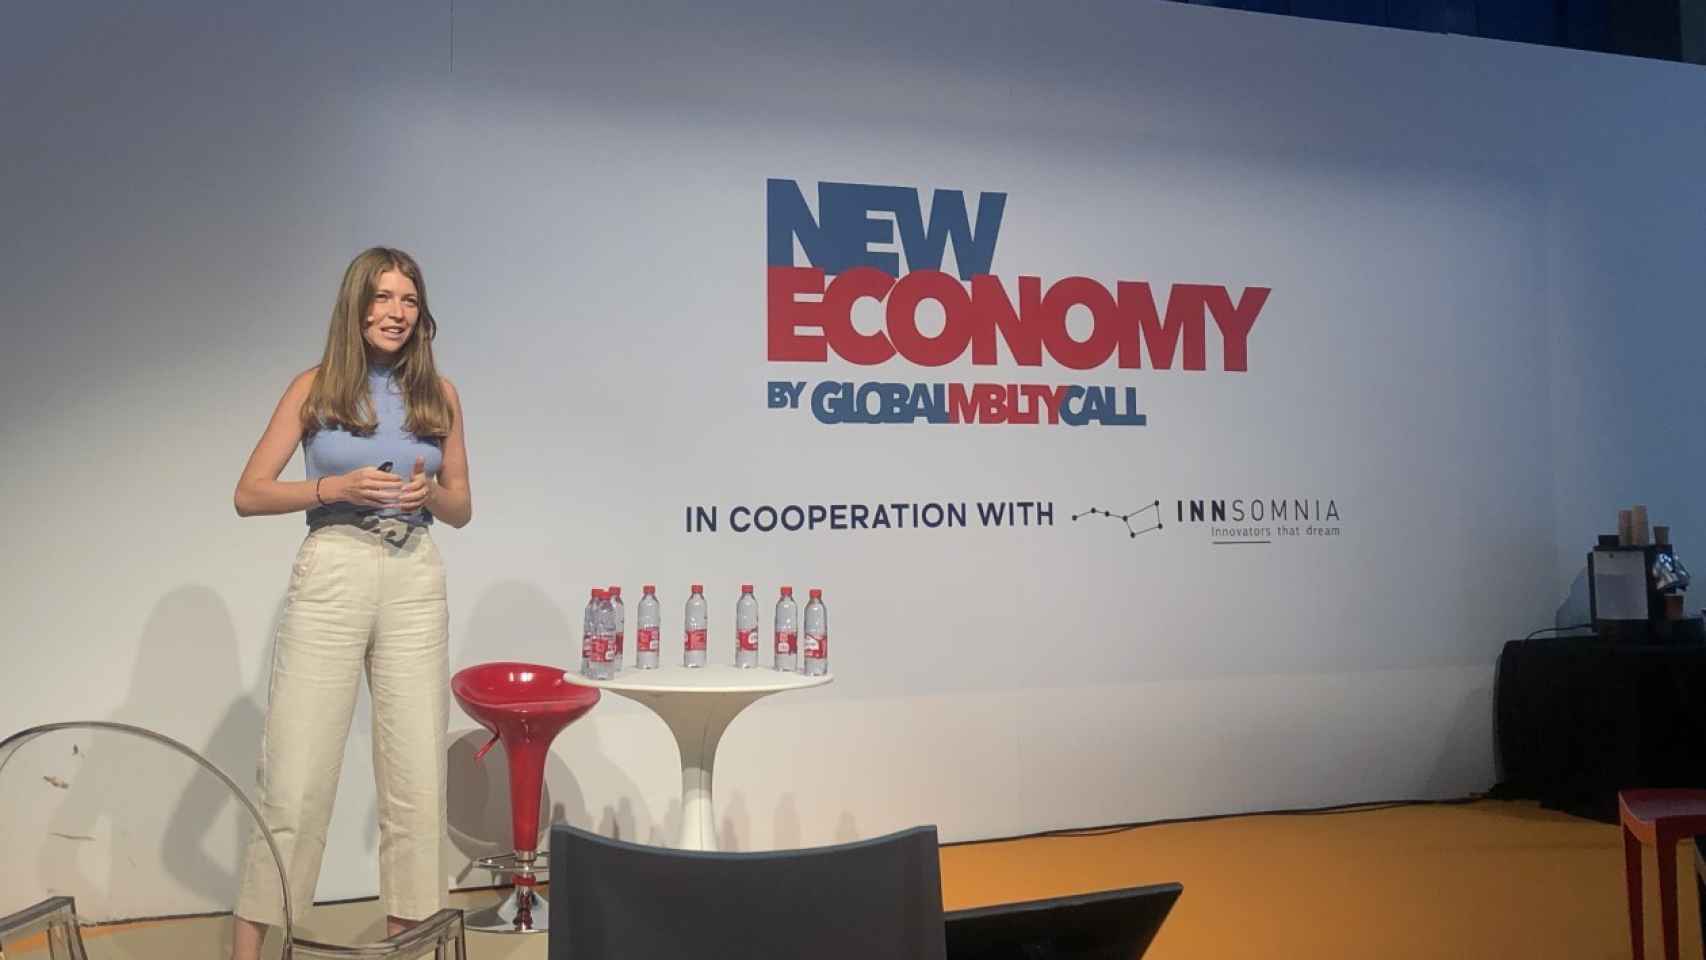 Andrea García, socia y fundadora de Hoop Solutions, en la presentación de la startup en el foro 'New Economy by GMC'.